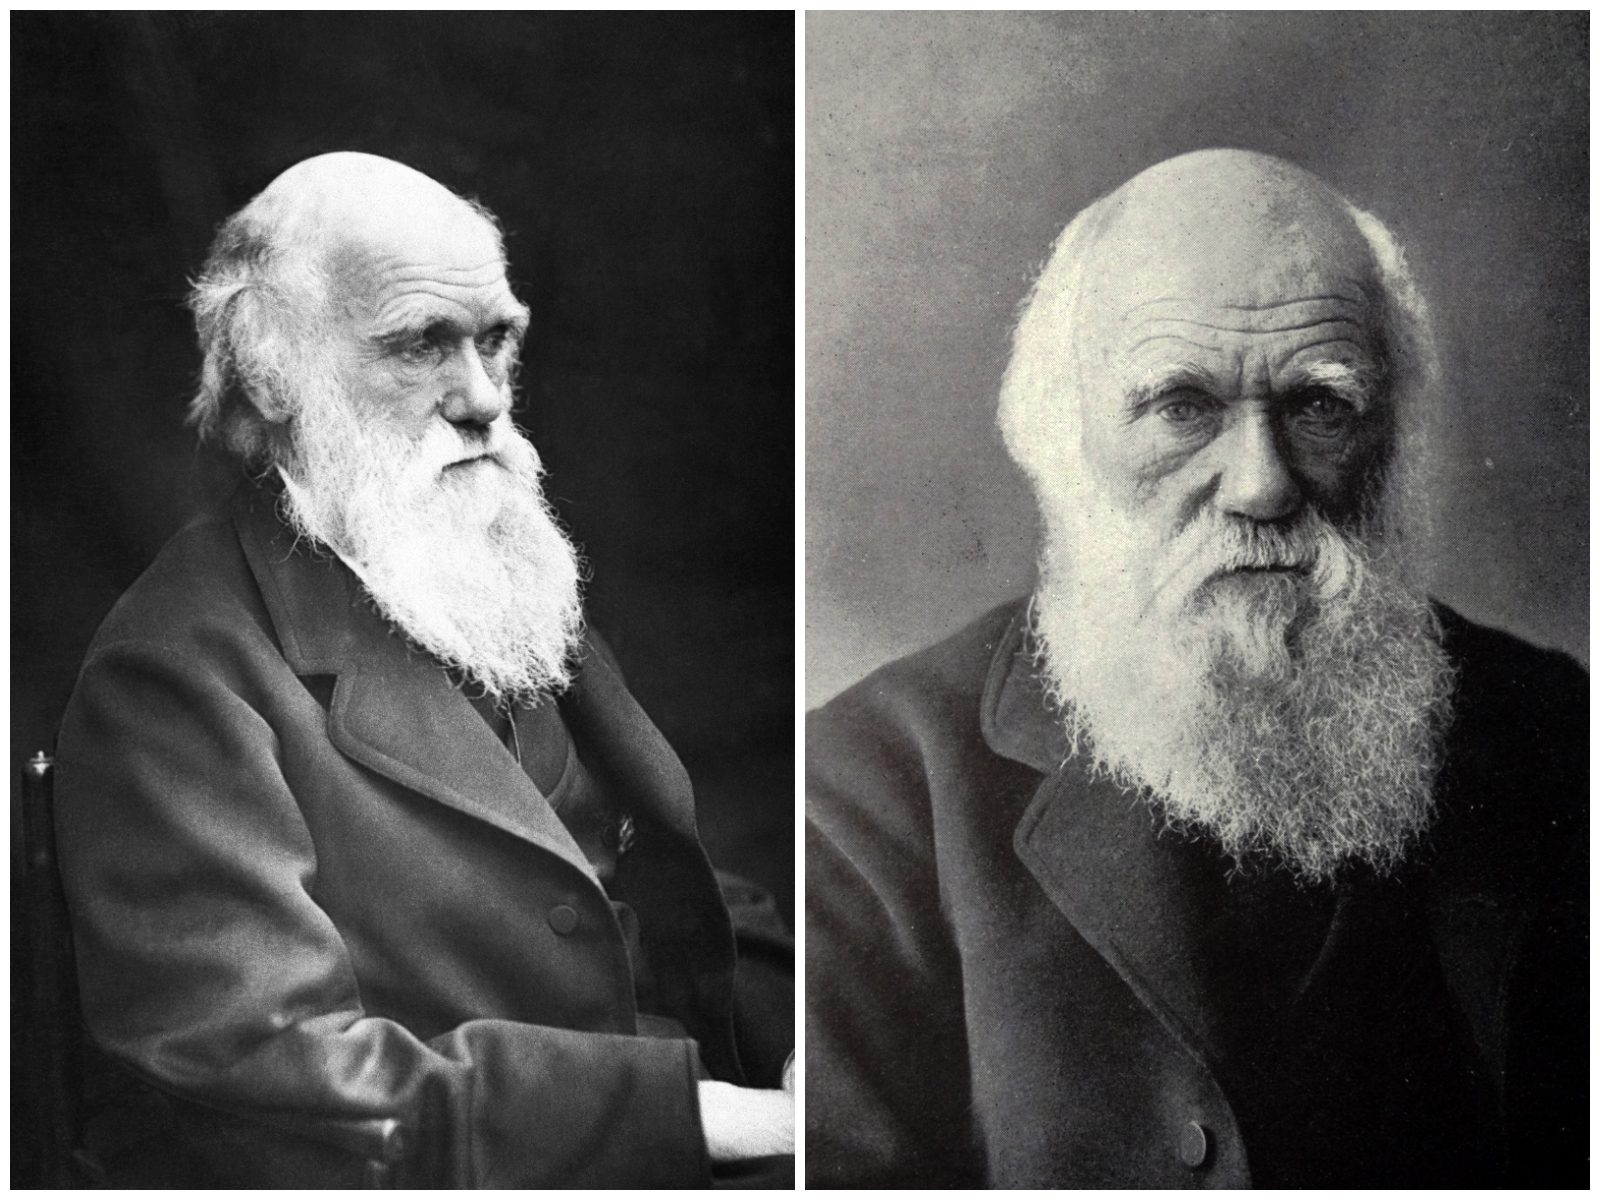 Charles Darwin's potraits